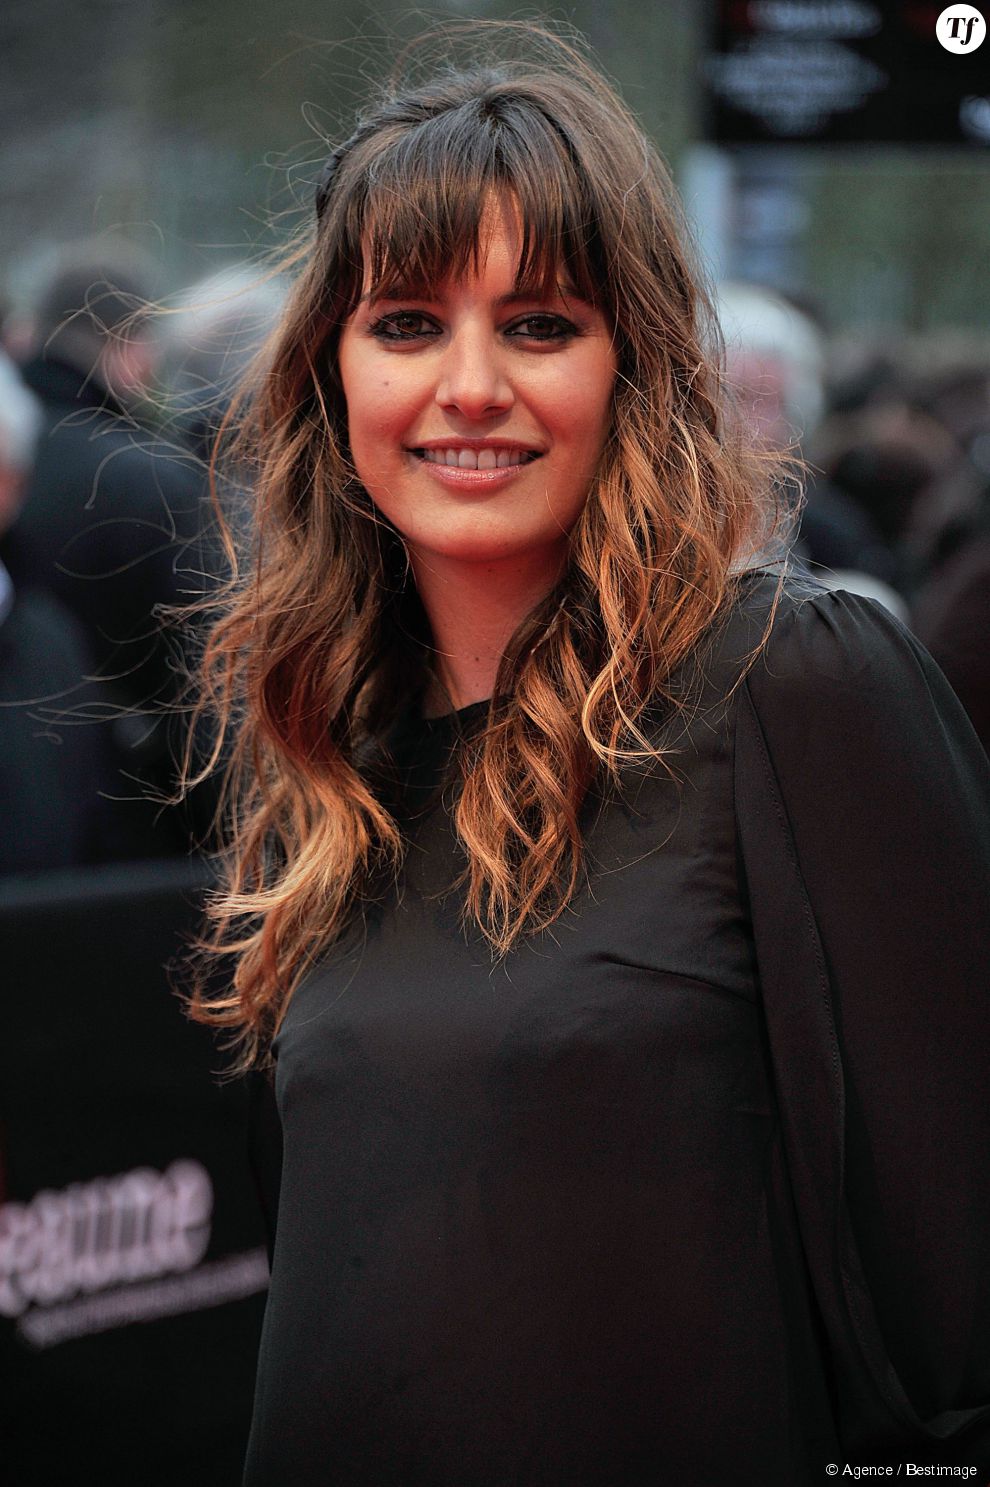  Laetitia Milot sur le tapis rouge du 5e Festival International du Film Policier de Beaune le 6 avril 2013.  